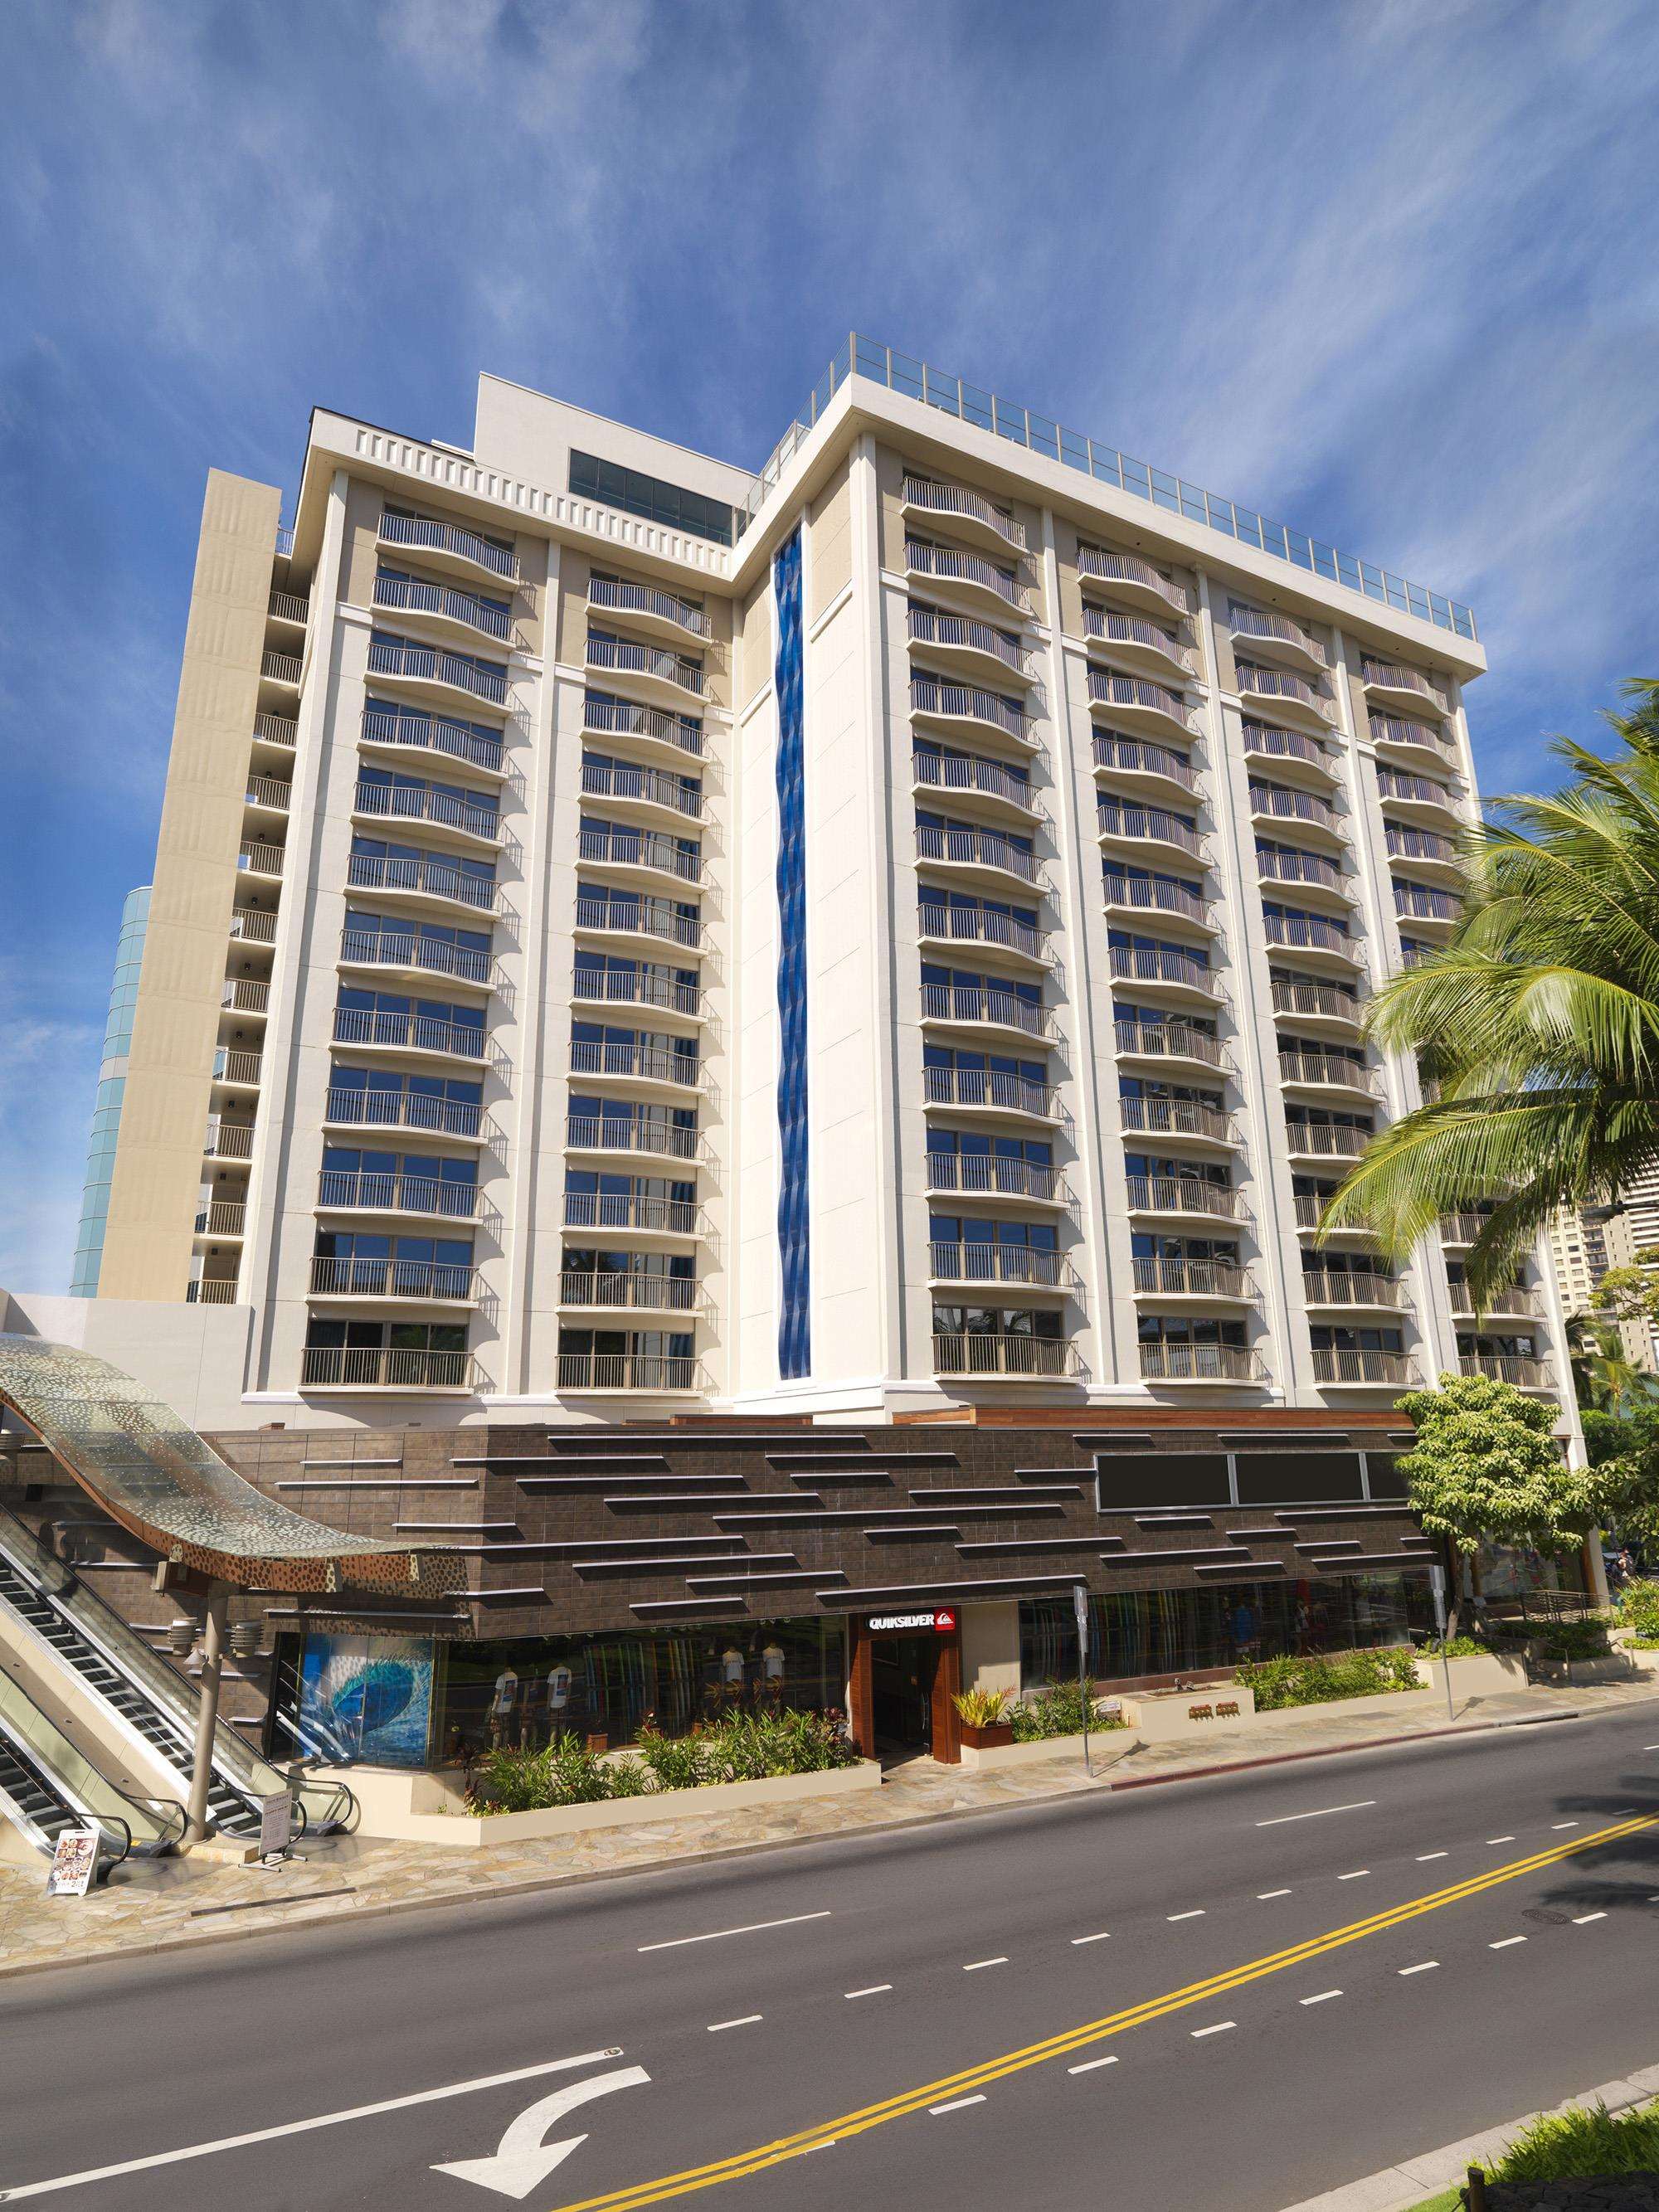 Hokulani Waikiki by Hilton Grand Vacations Photo